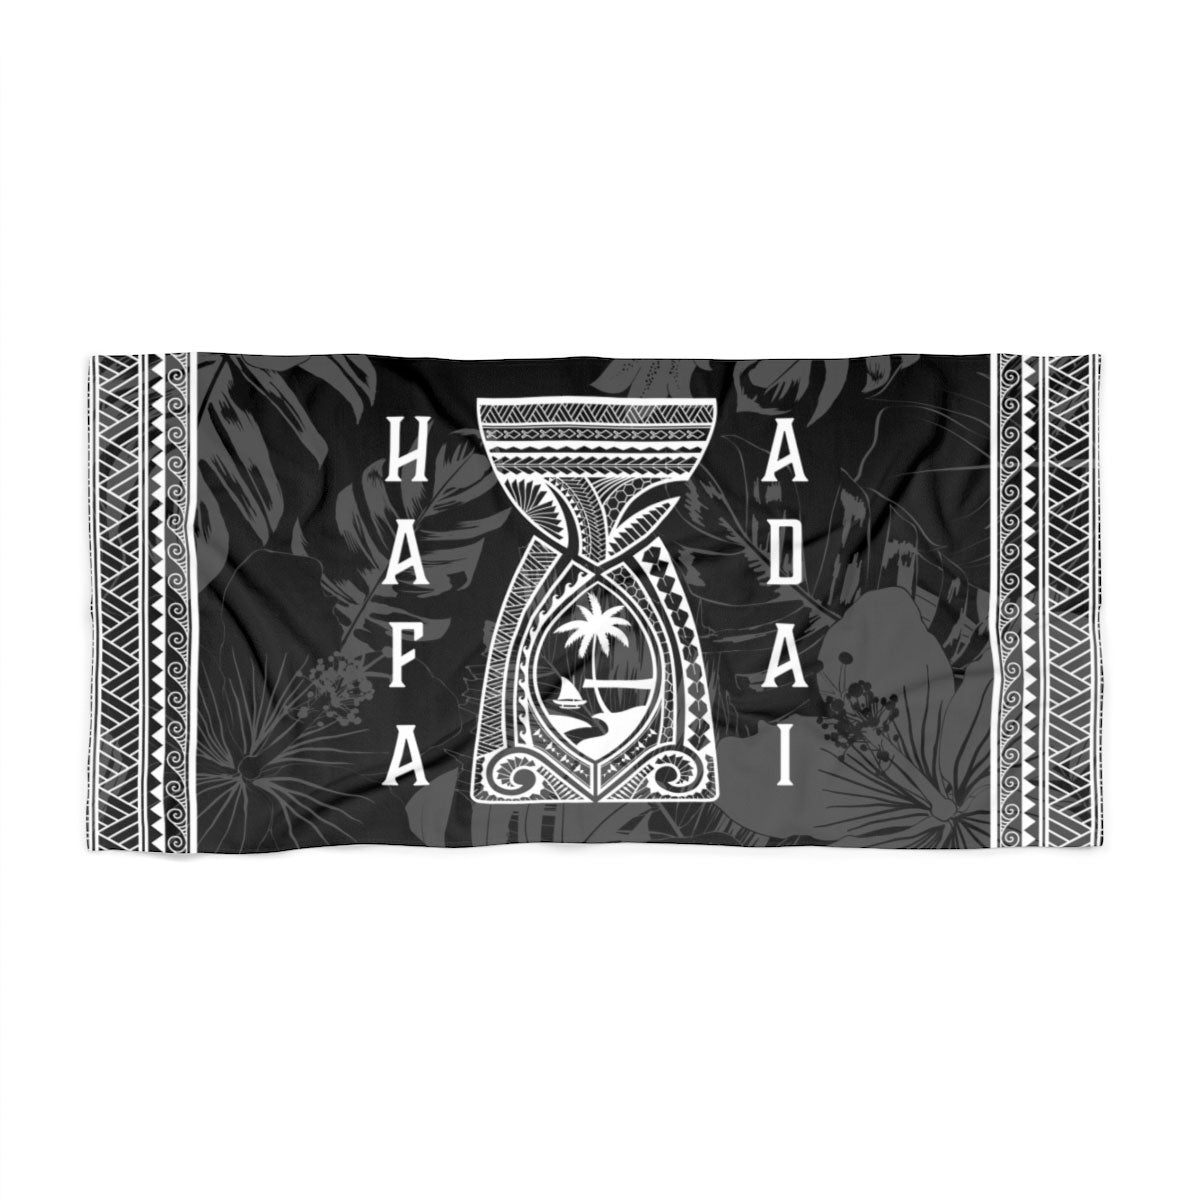 Hafa Adai Latte Stone Tribal Guam Beach Towel